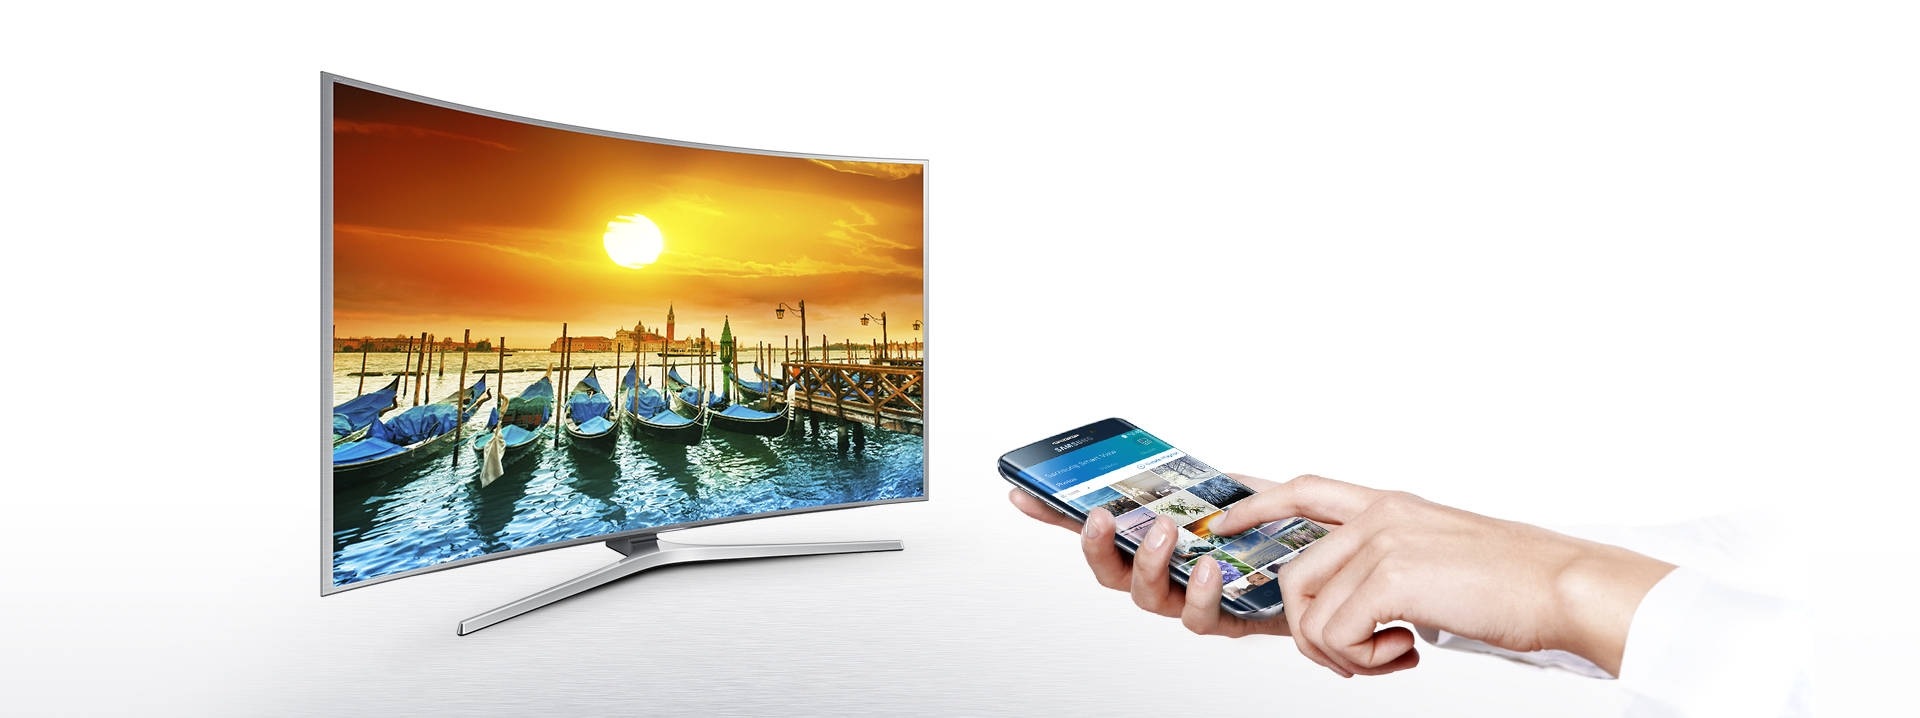 Samsung Smart View | Samsung BR